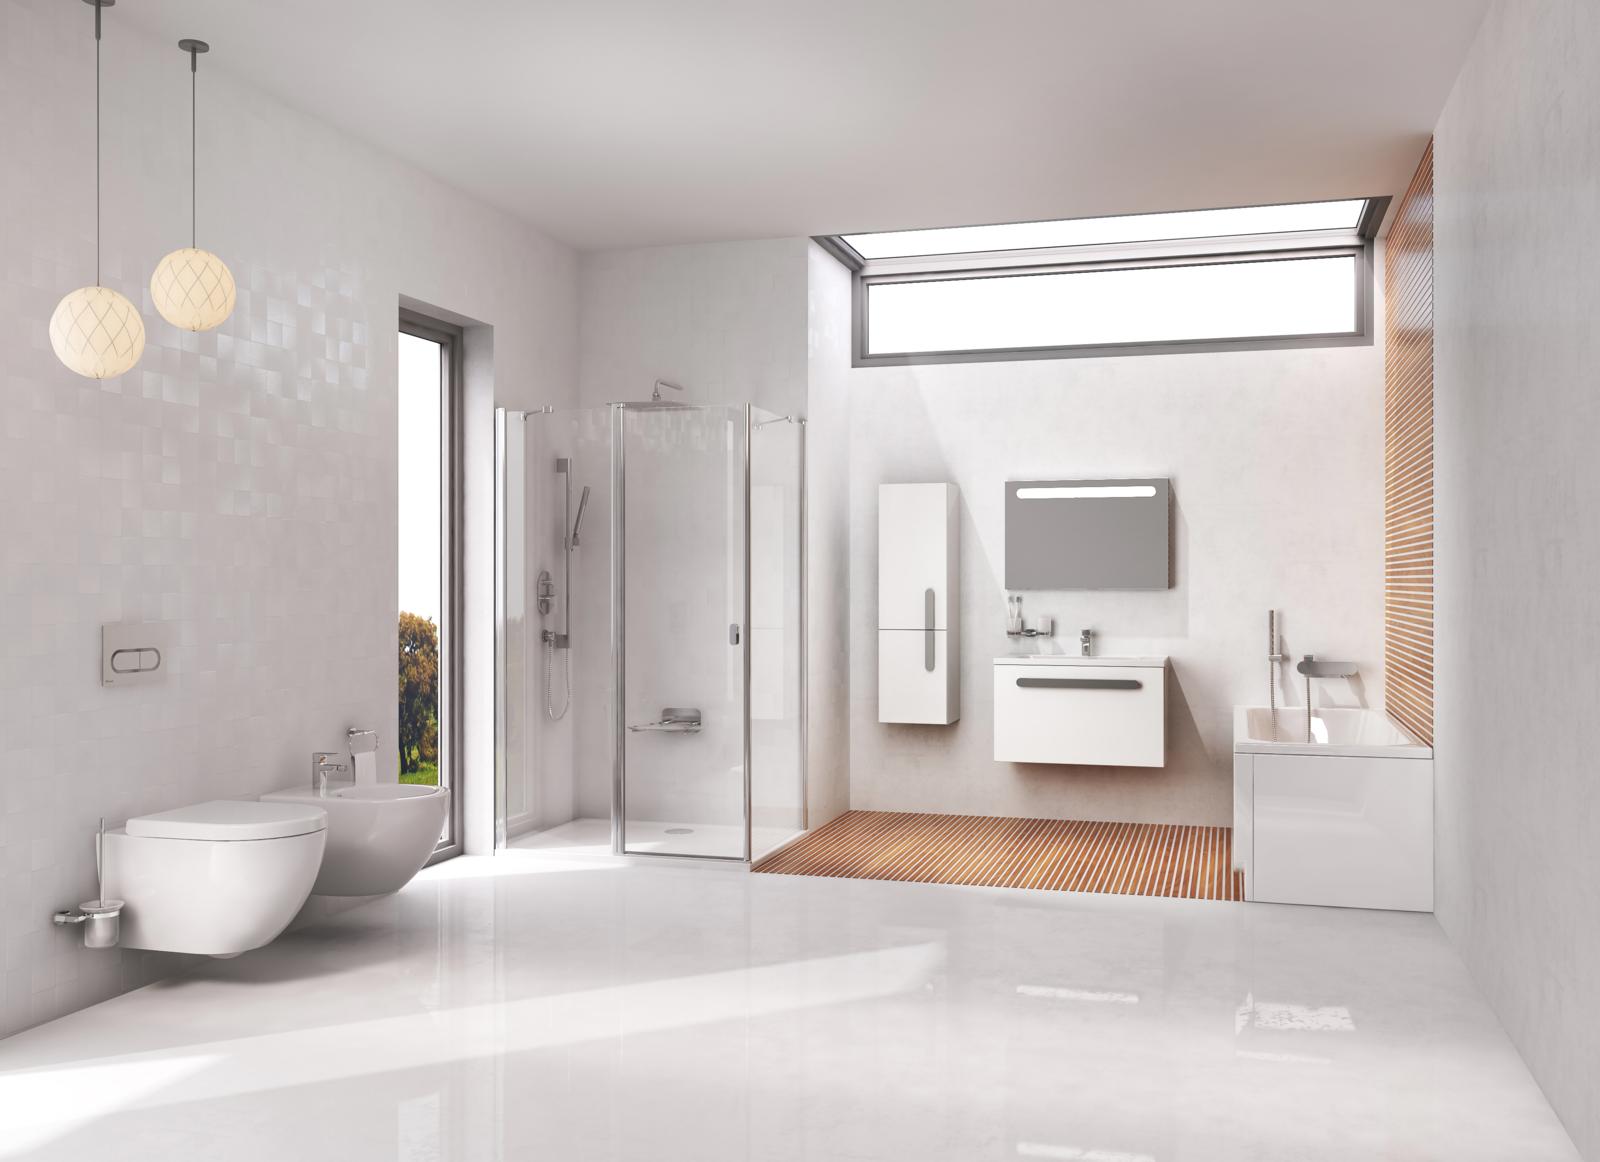 A tiszta fürdőszoba kulcsa a jól megválasztott tisztítószer, amely kíméletesen tisztítja a szaniterek felületeit.